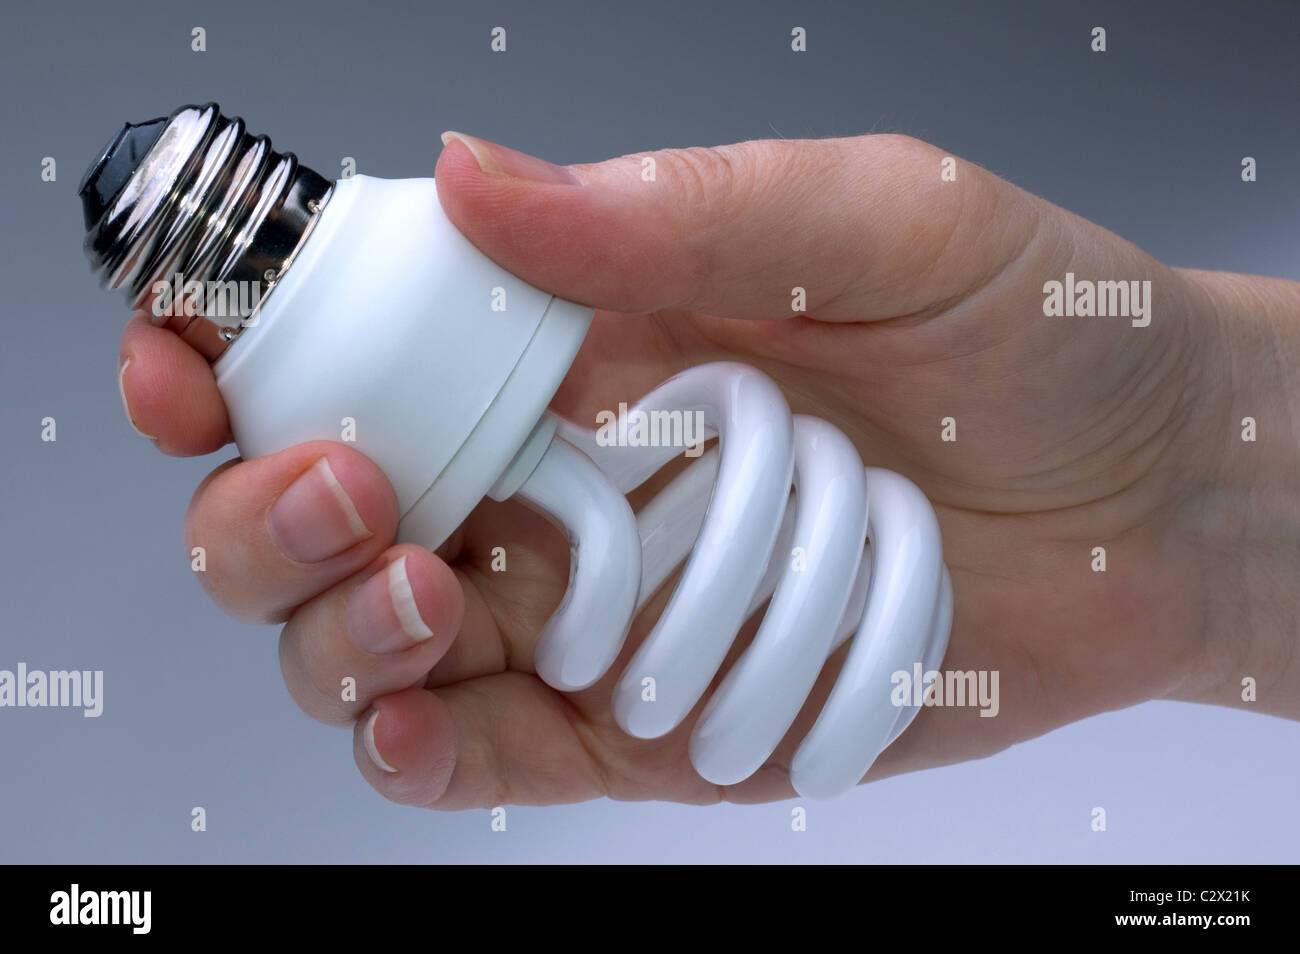 Разбилась энергосберегающая лампочка: что делать, избавляемся от ртути